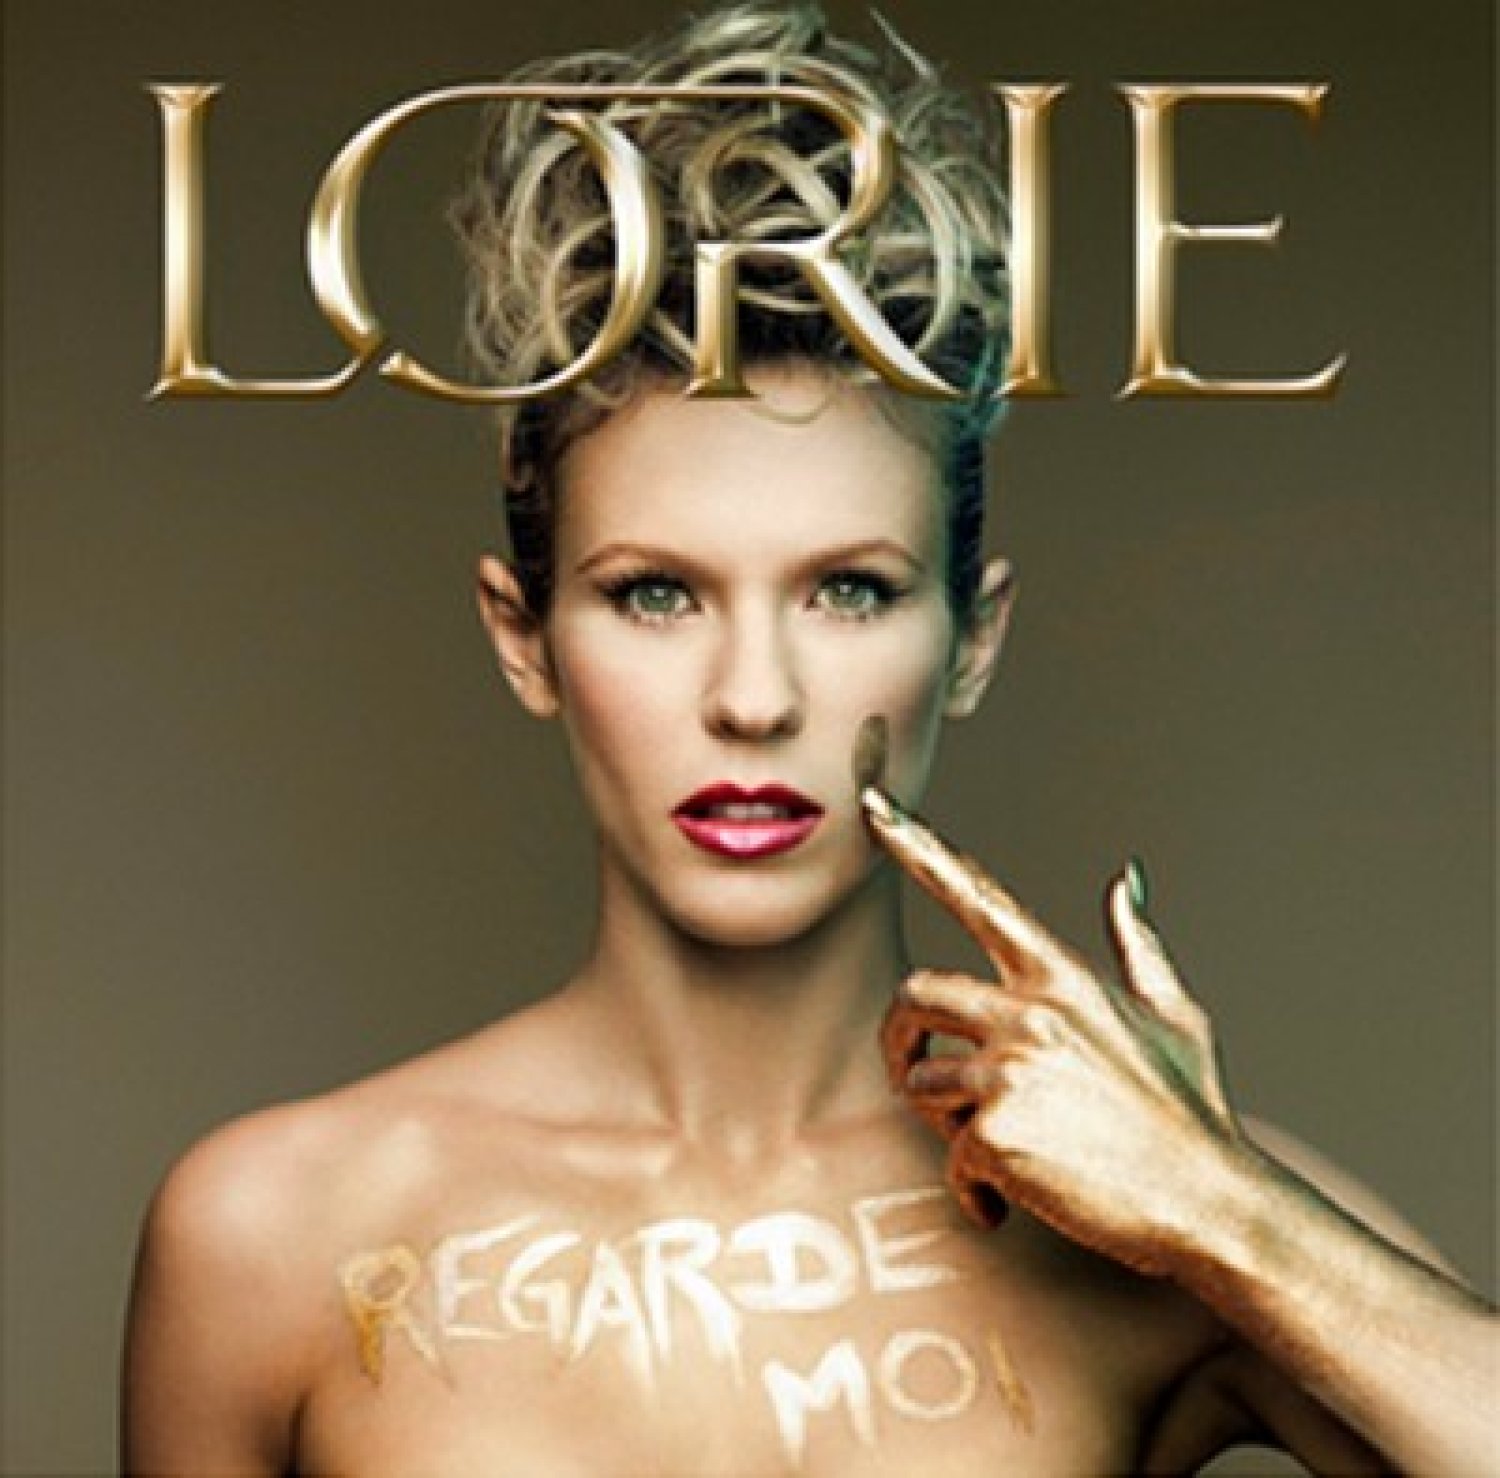 Regarde-moi, le nouvel album de Lorie